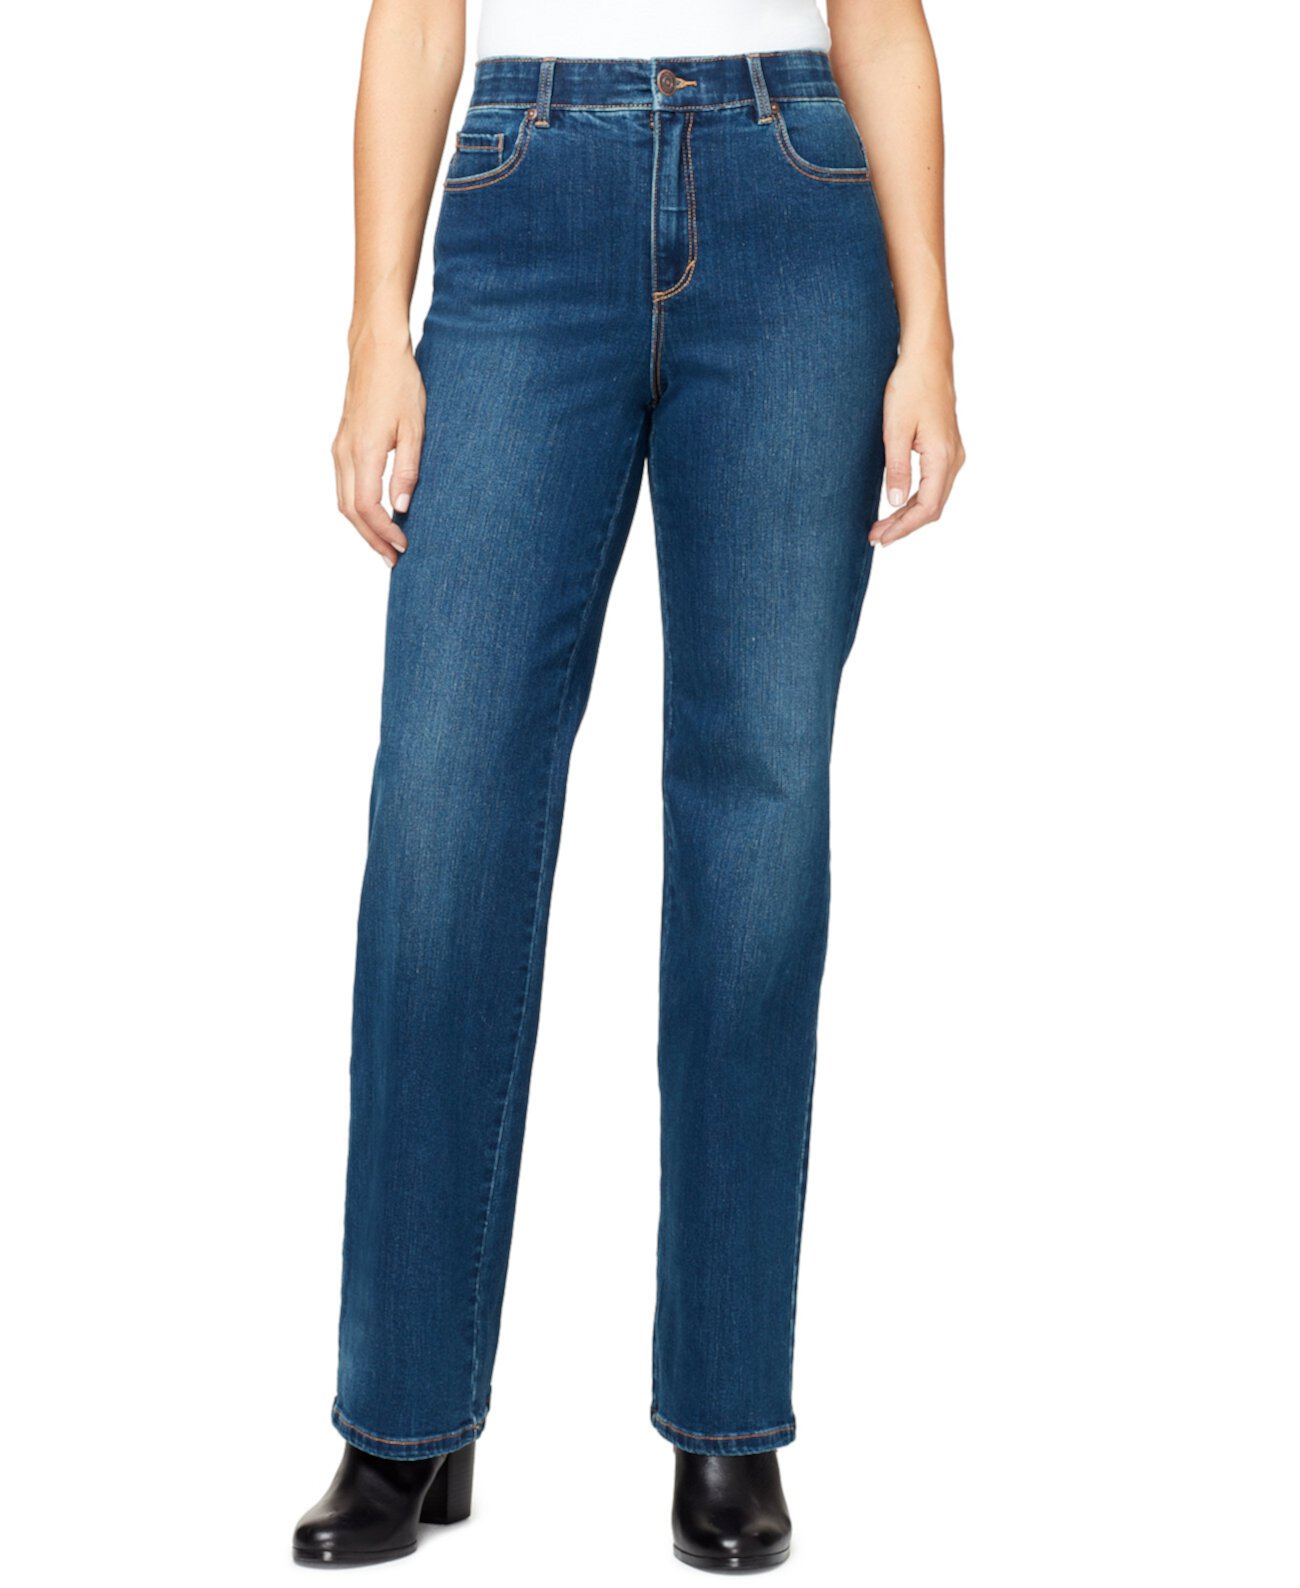 Свободные прямые джинсы Petite с высокой посадкой в шортах Petite & Petite Gloria Vanderbilt